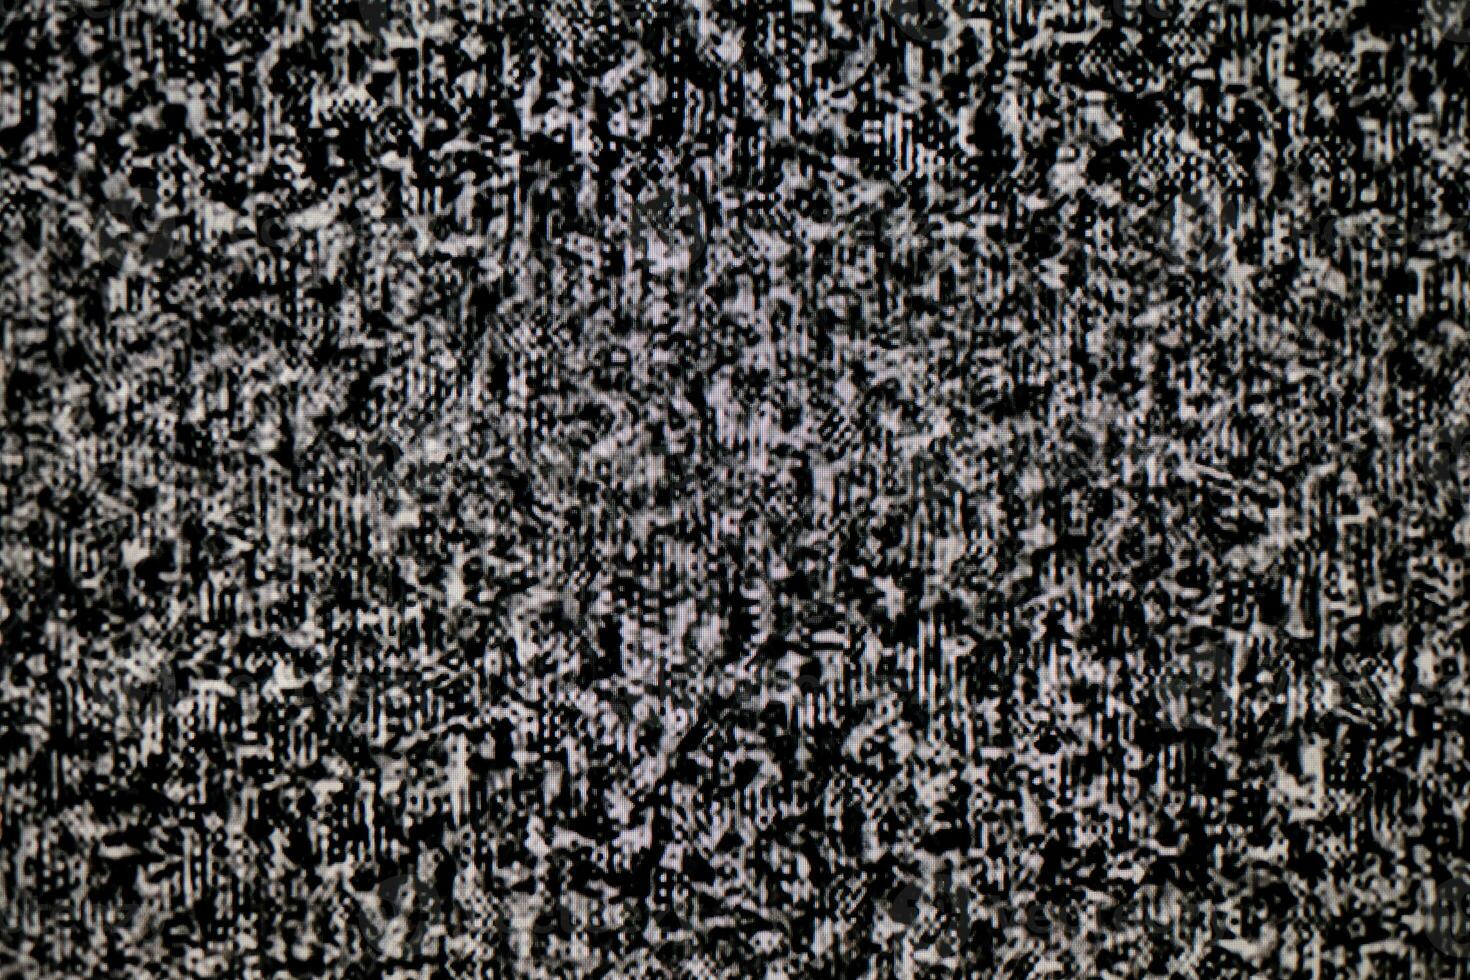 nenhum sinal no monitor da televisão, ruído estático ruim tv preto e branco foto